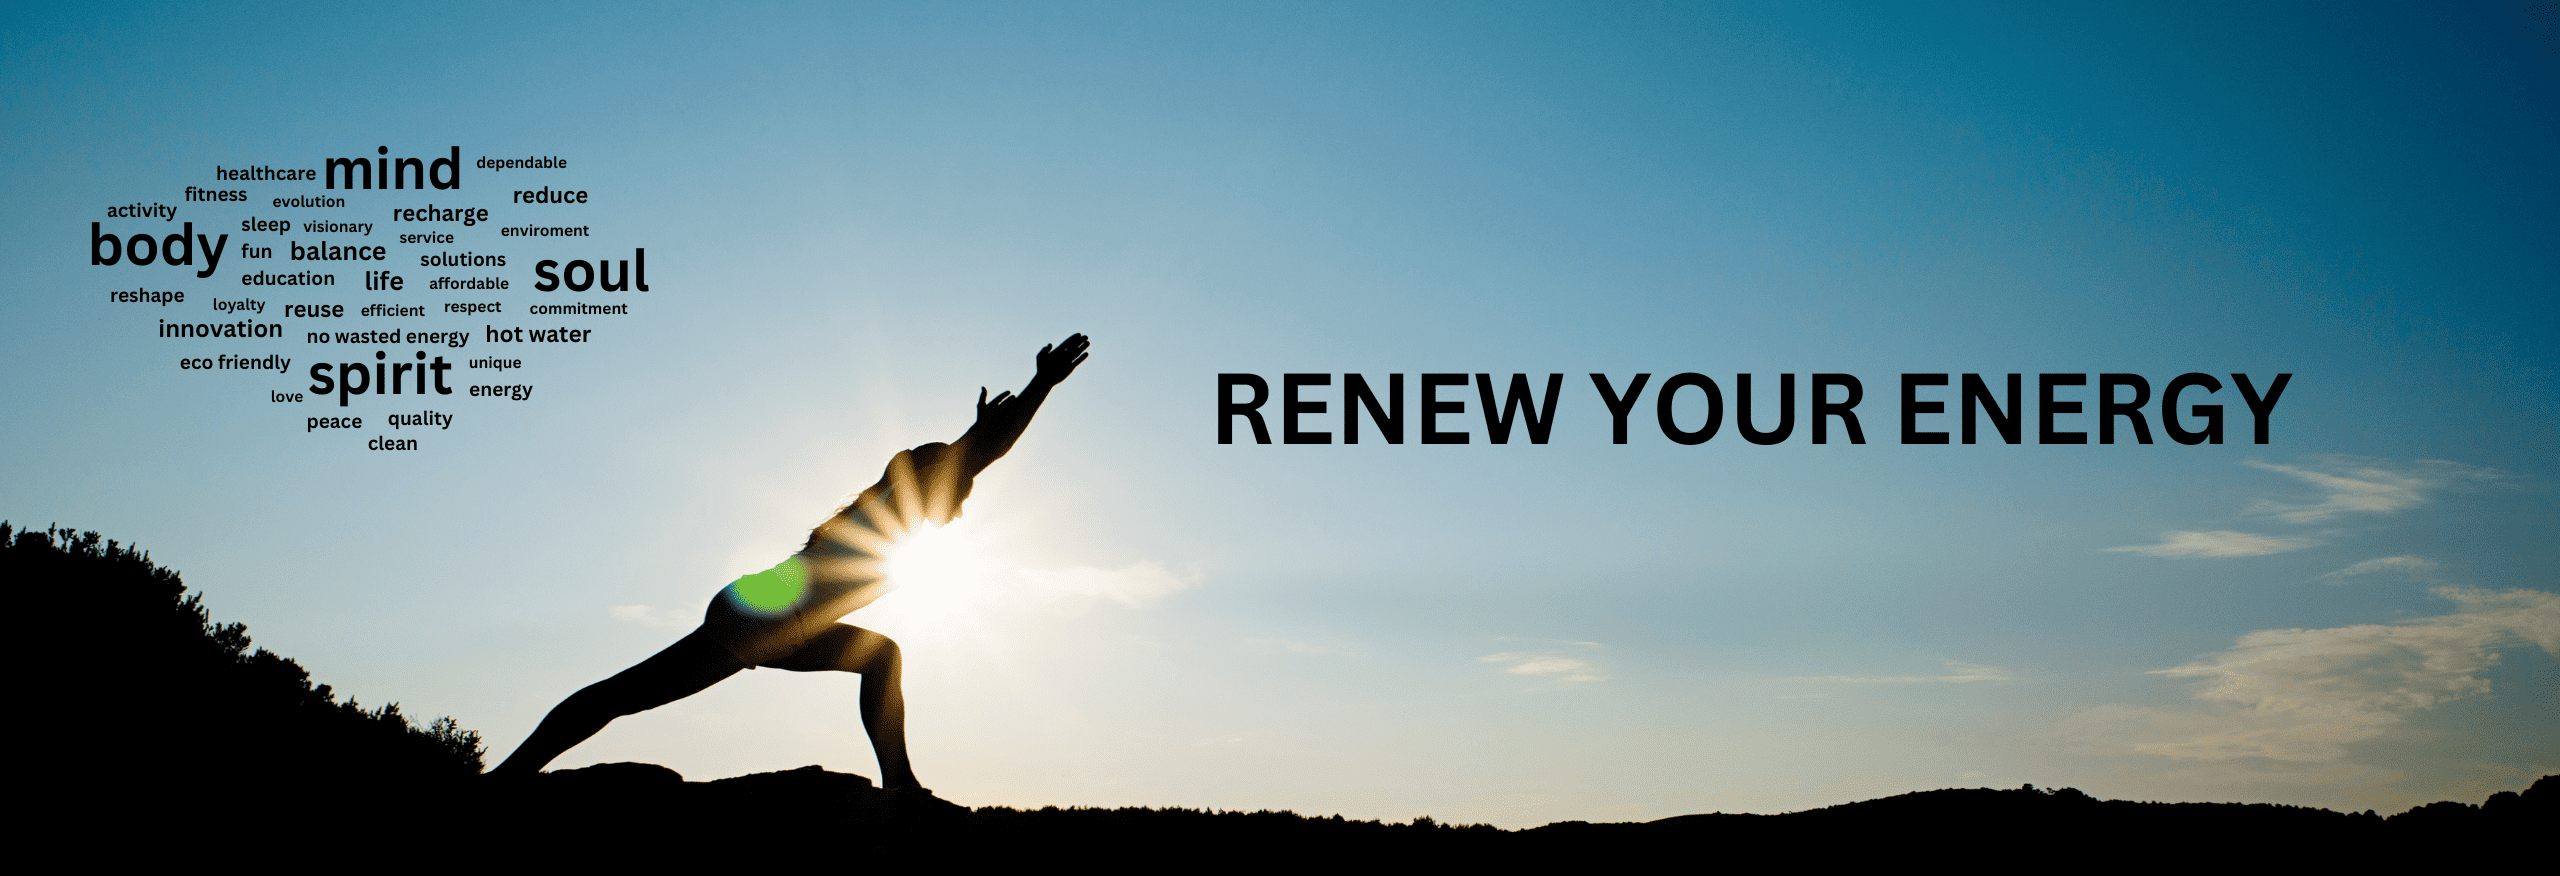 renew your energy